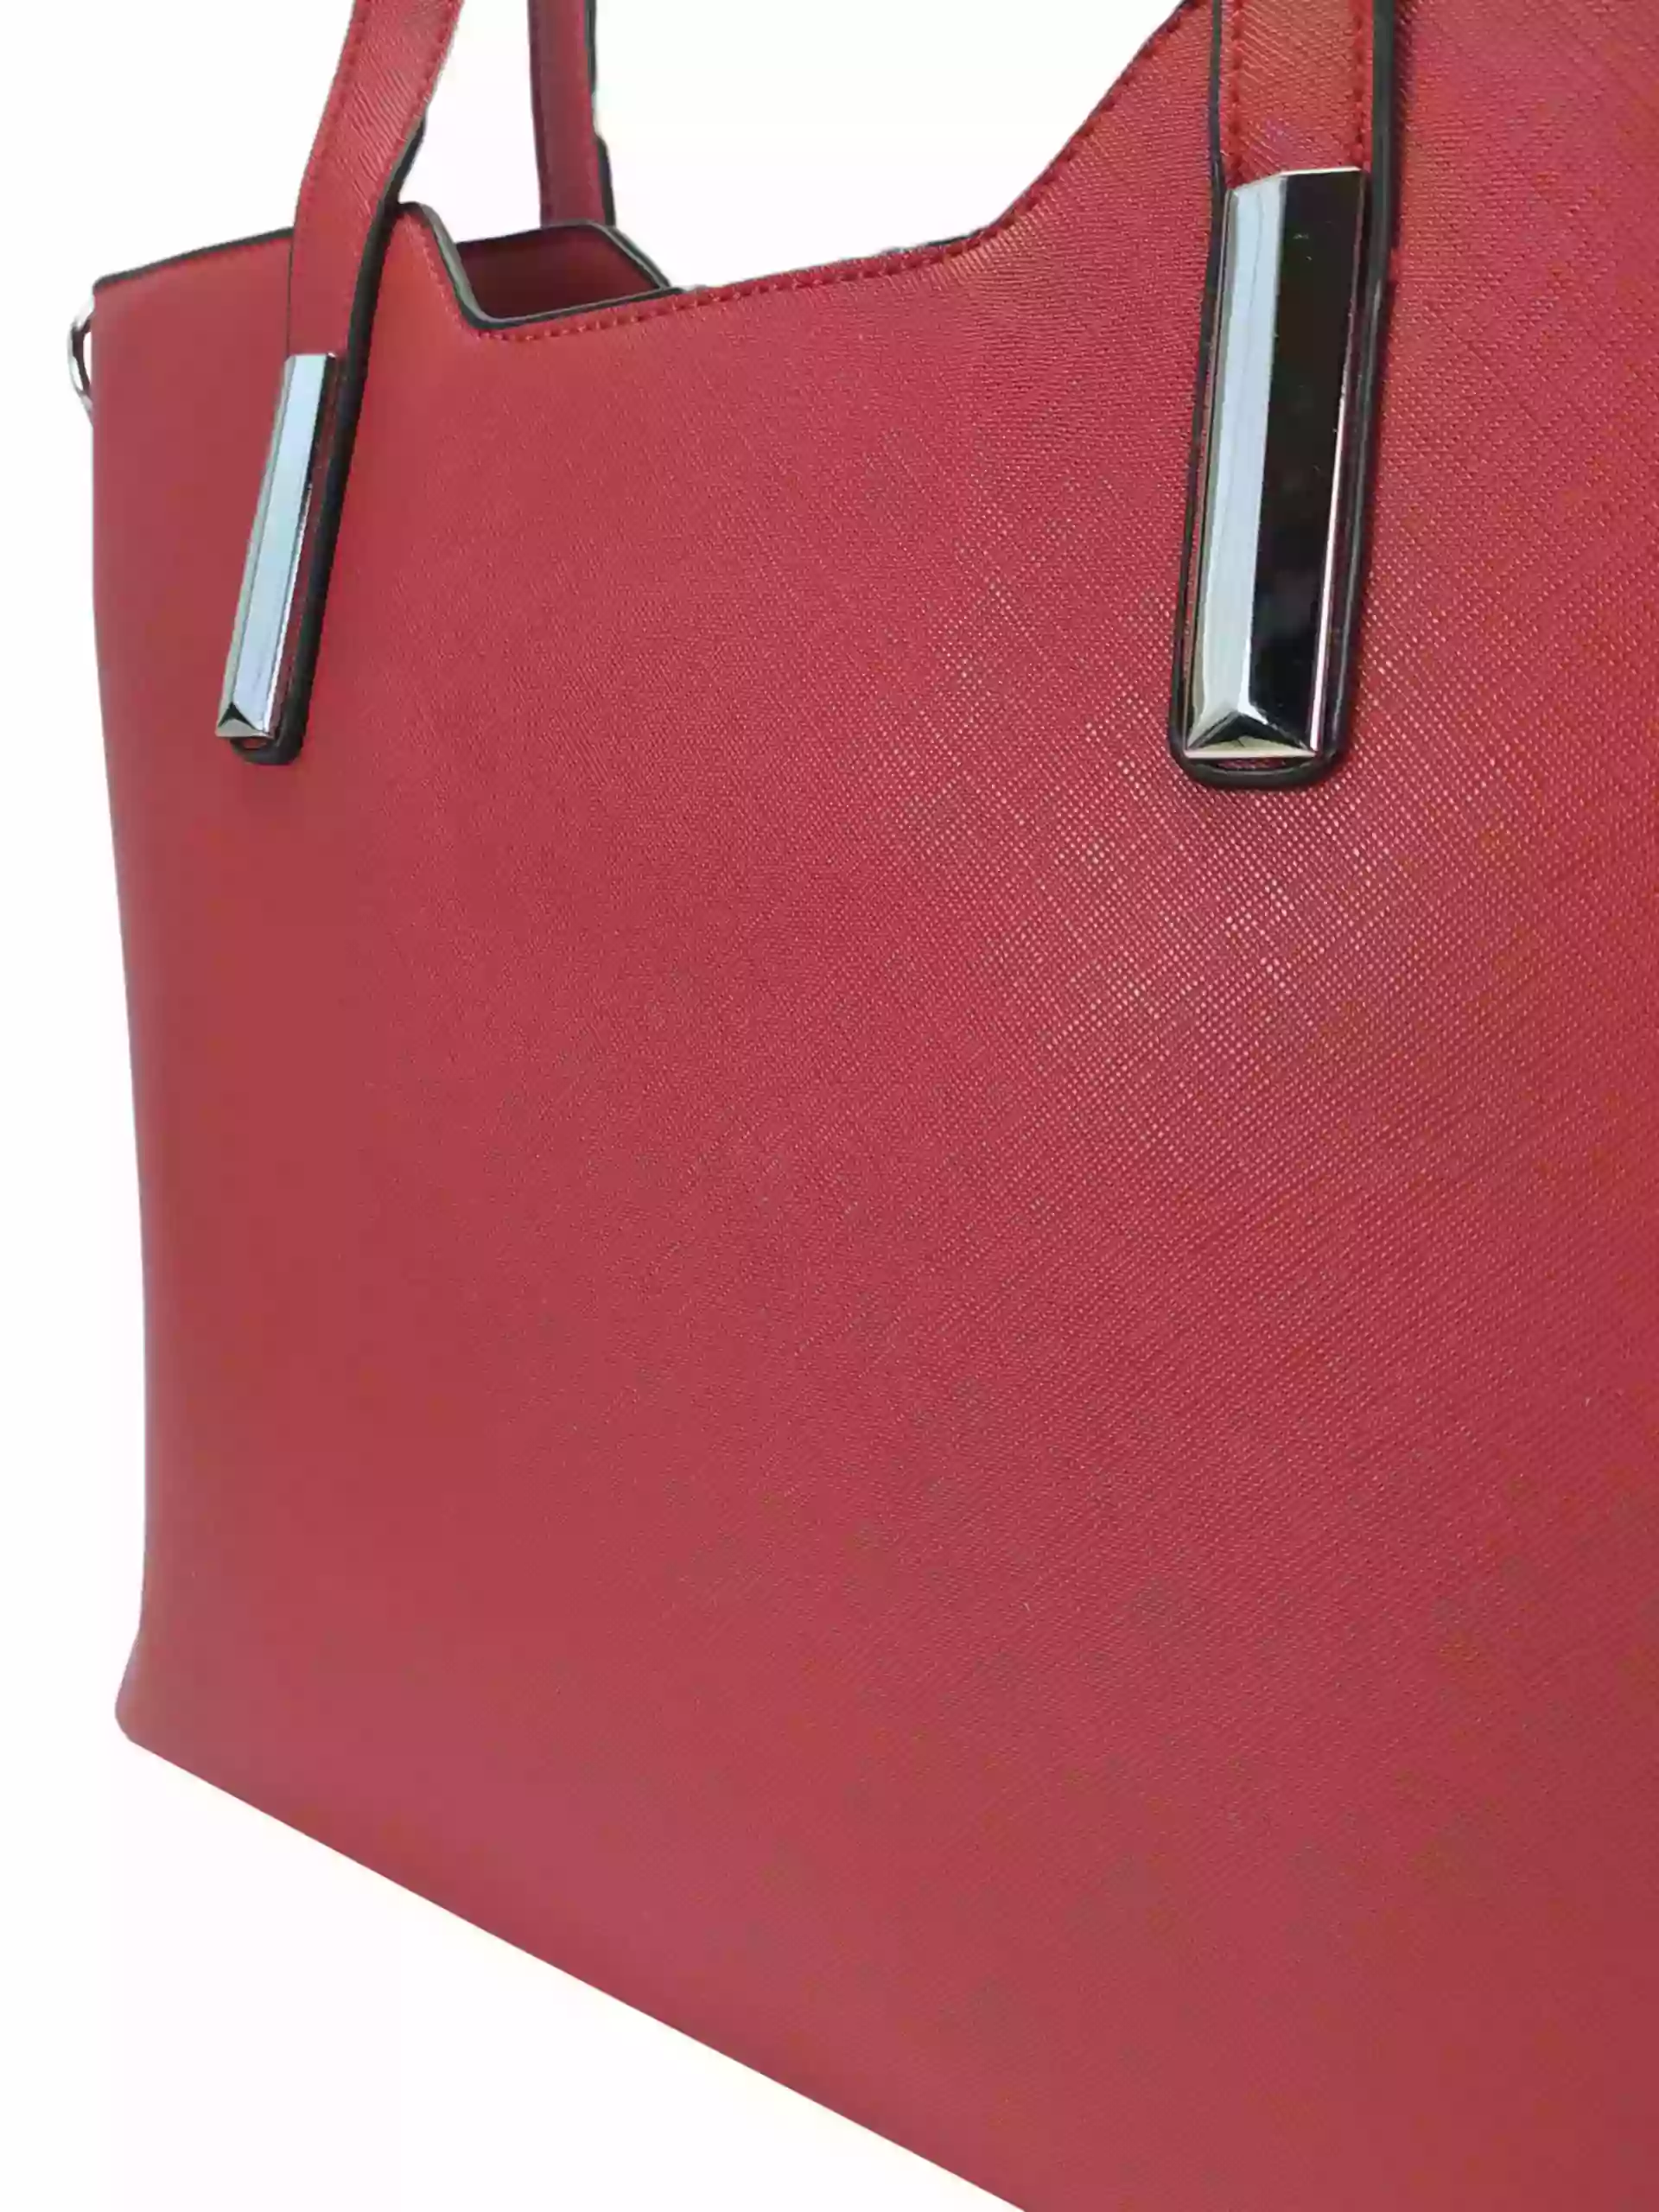 Tmavě červená kabelka do ruky se stříbrnými detaily, Tapple, H20801, detail kabelky do ruky